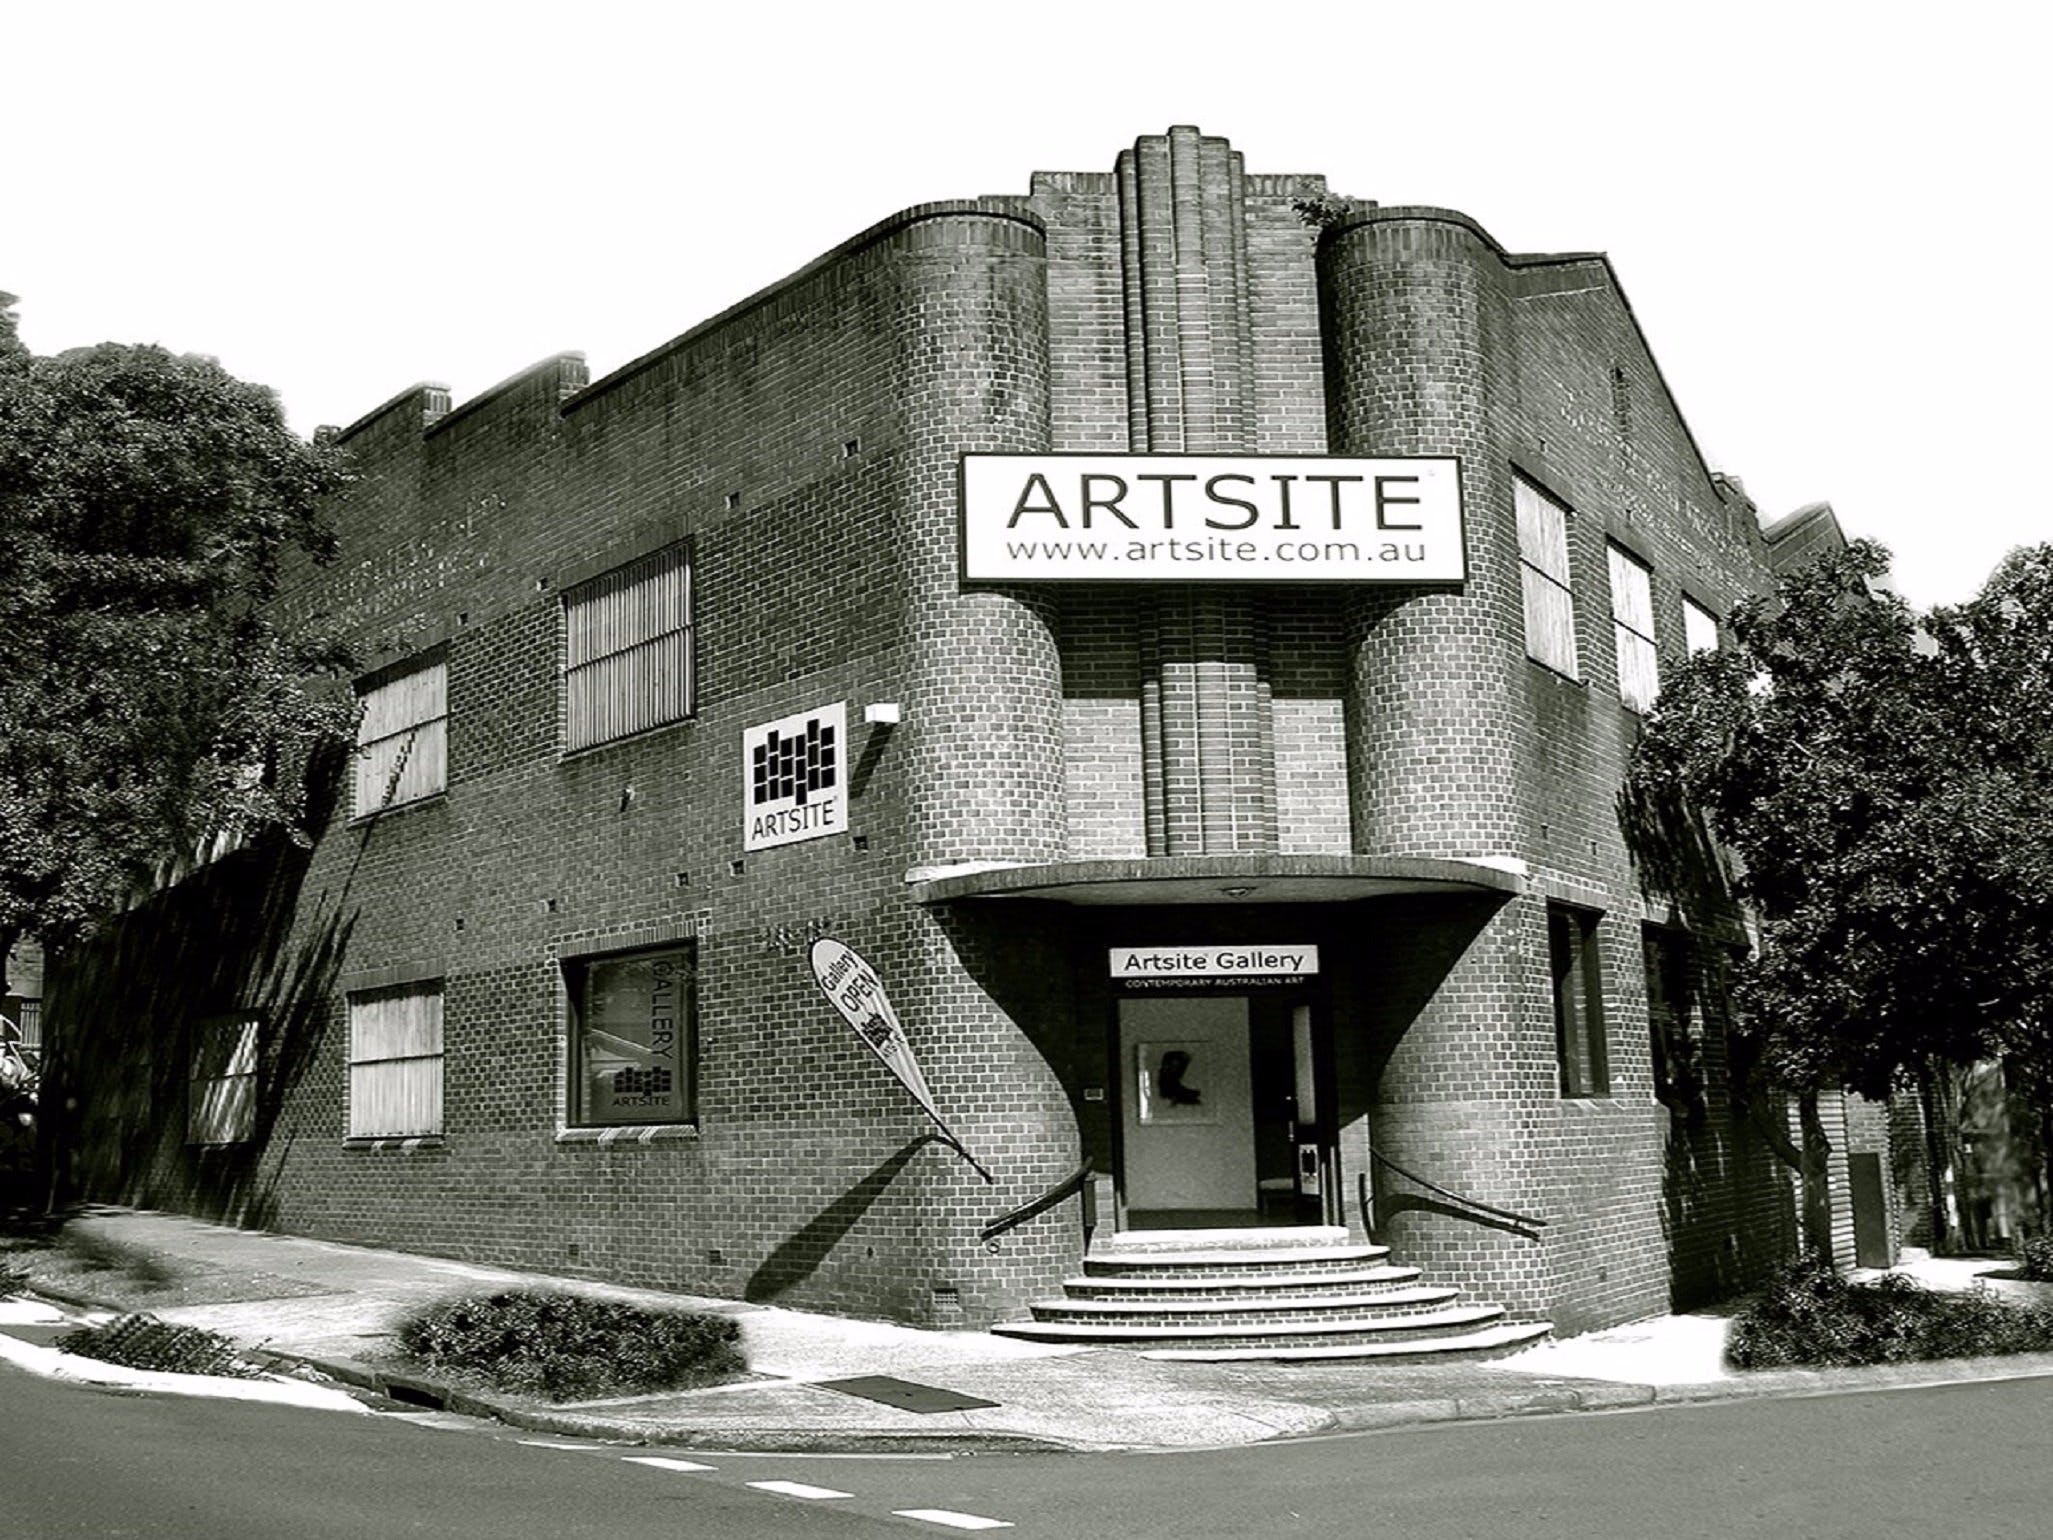 Artsite Galleries - Find Attractions